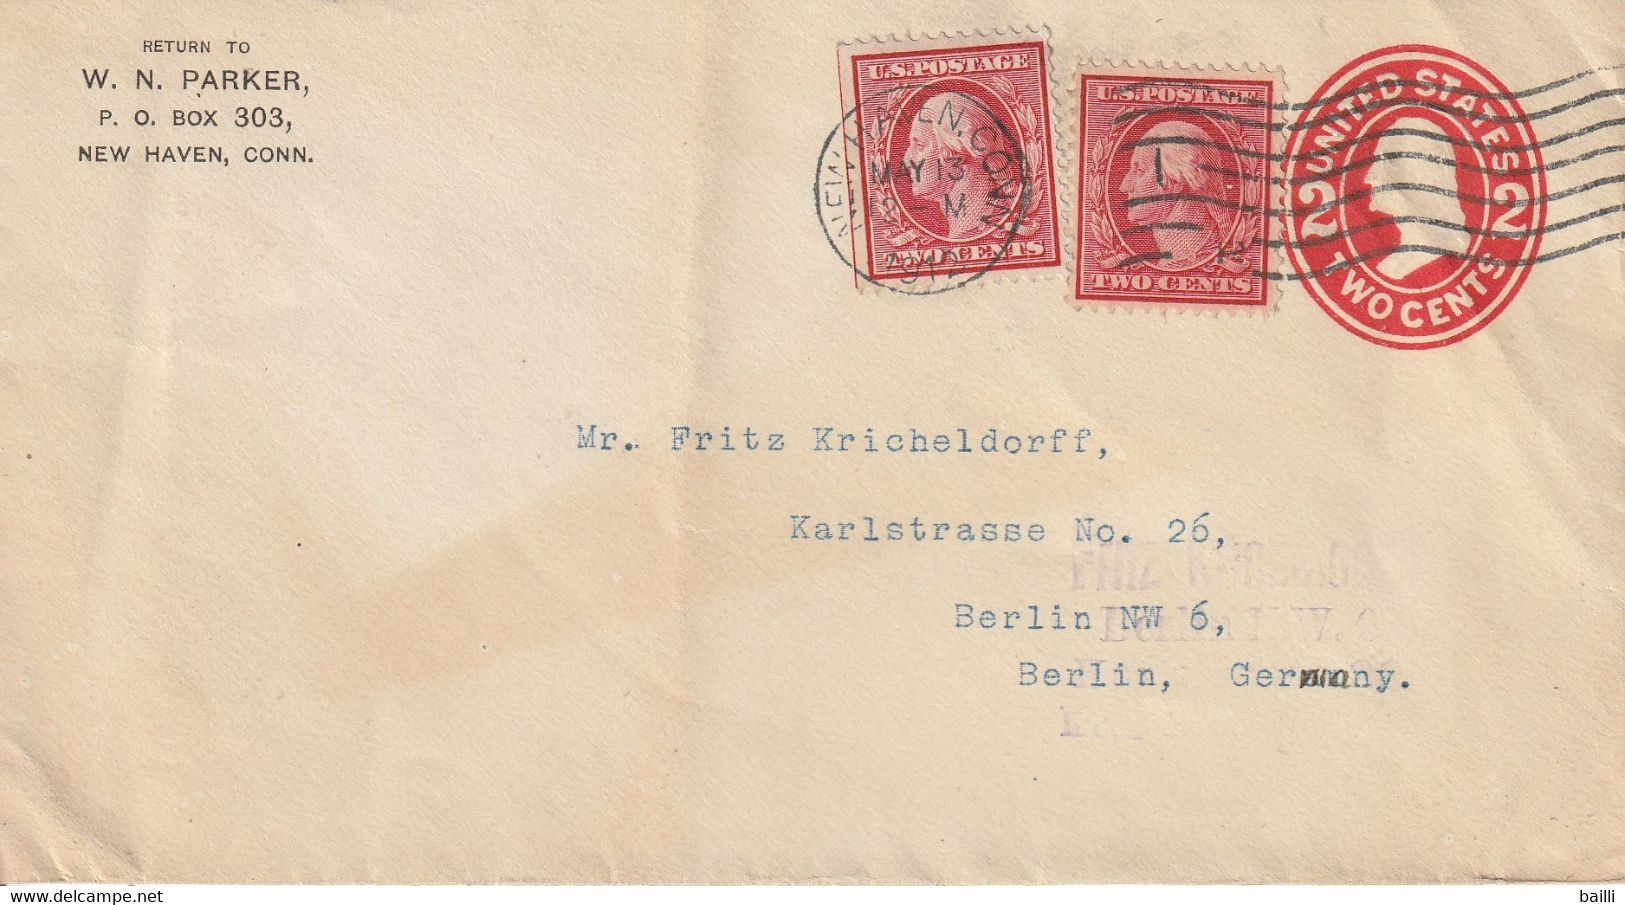 Etats Unis Entier Postal Privé Pour L'Allemagne 1912 - 1901-20